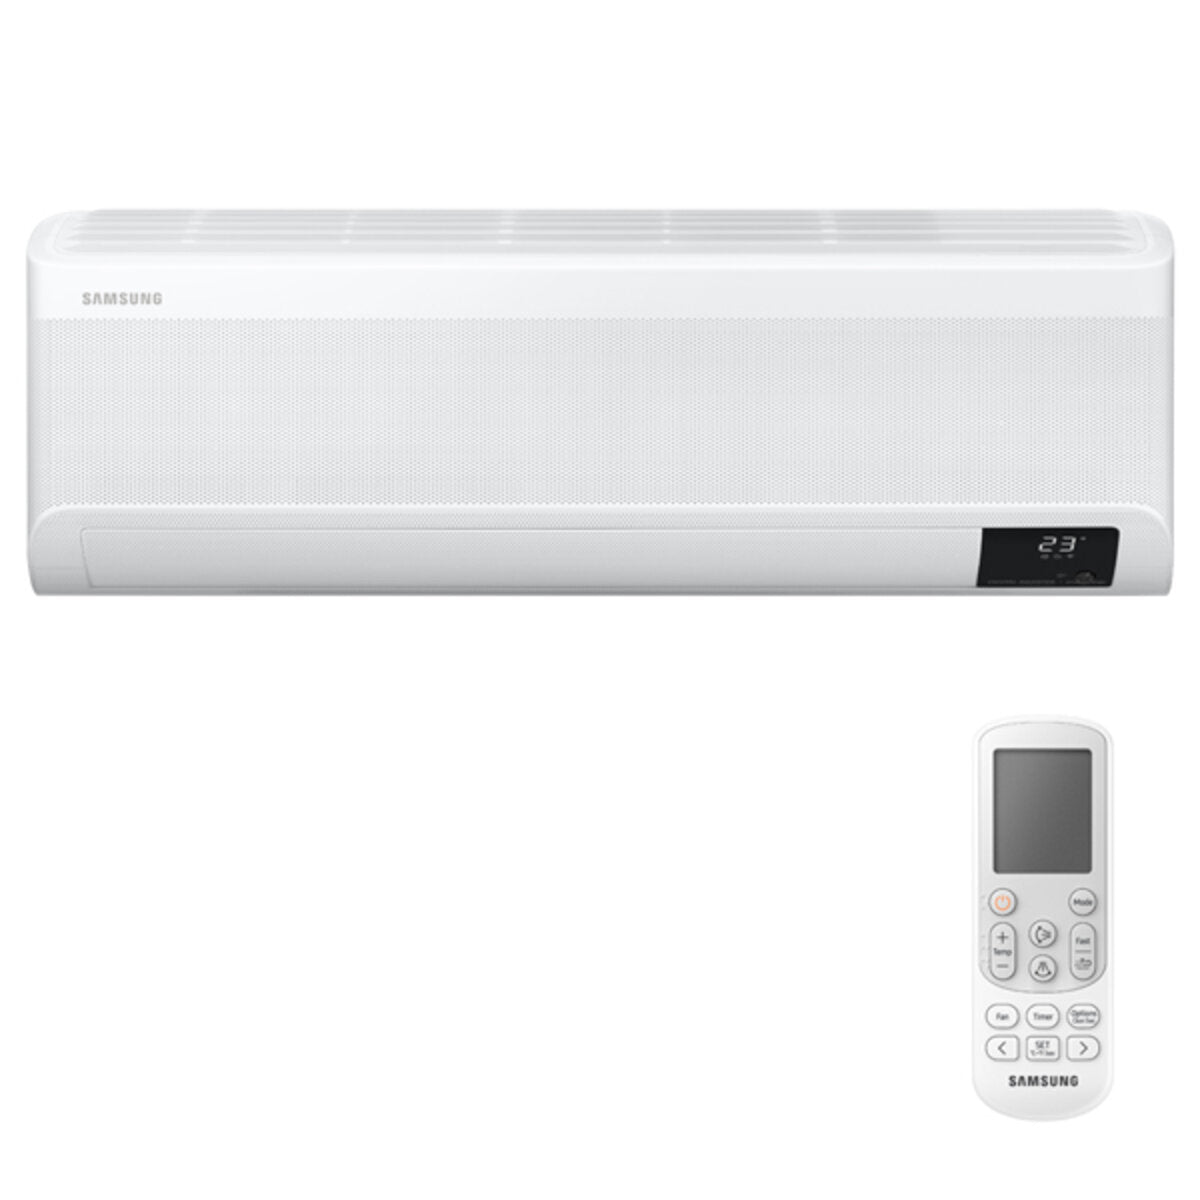 Samsung windfree Klimaanlage Avant Penta Split 7000 + 7000 + 9000 + 9000 + 9000 BTU Inverter A++ WLAN Außengerät 10,0 kW